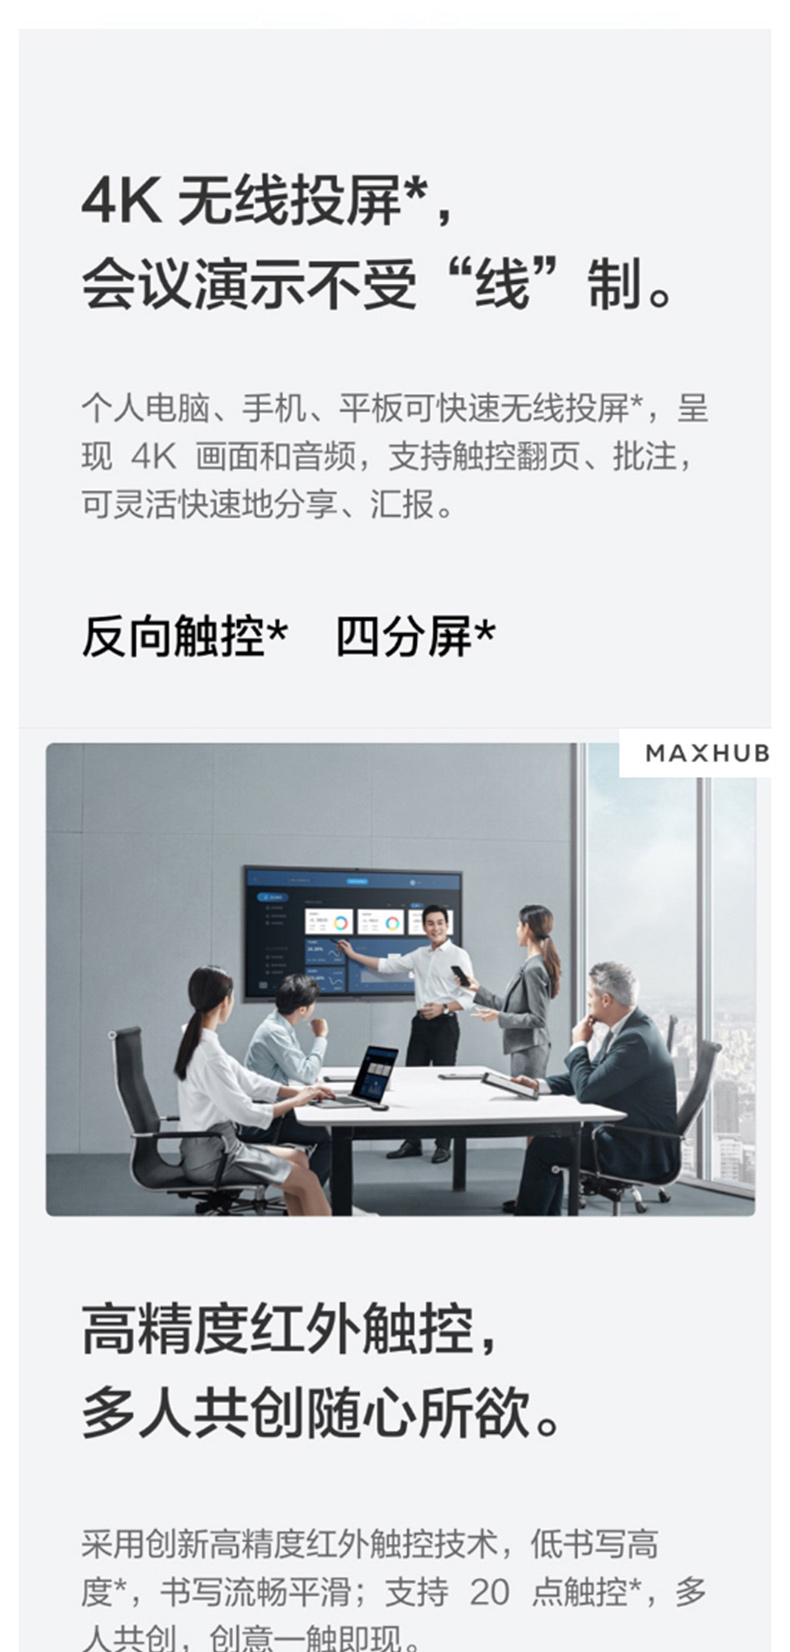 MAXHUB V5 经典版 86英寸 智能会议平板/交互式电子白板 CA86CA 纯安卓版SA08  +无线传屏+智能笔